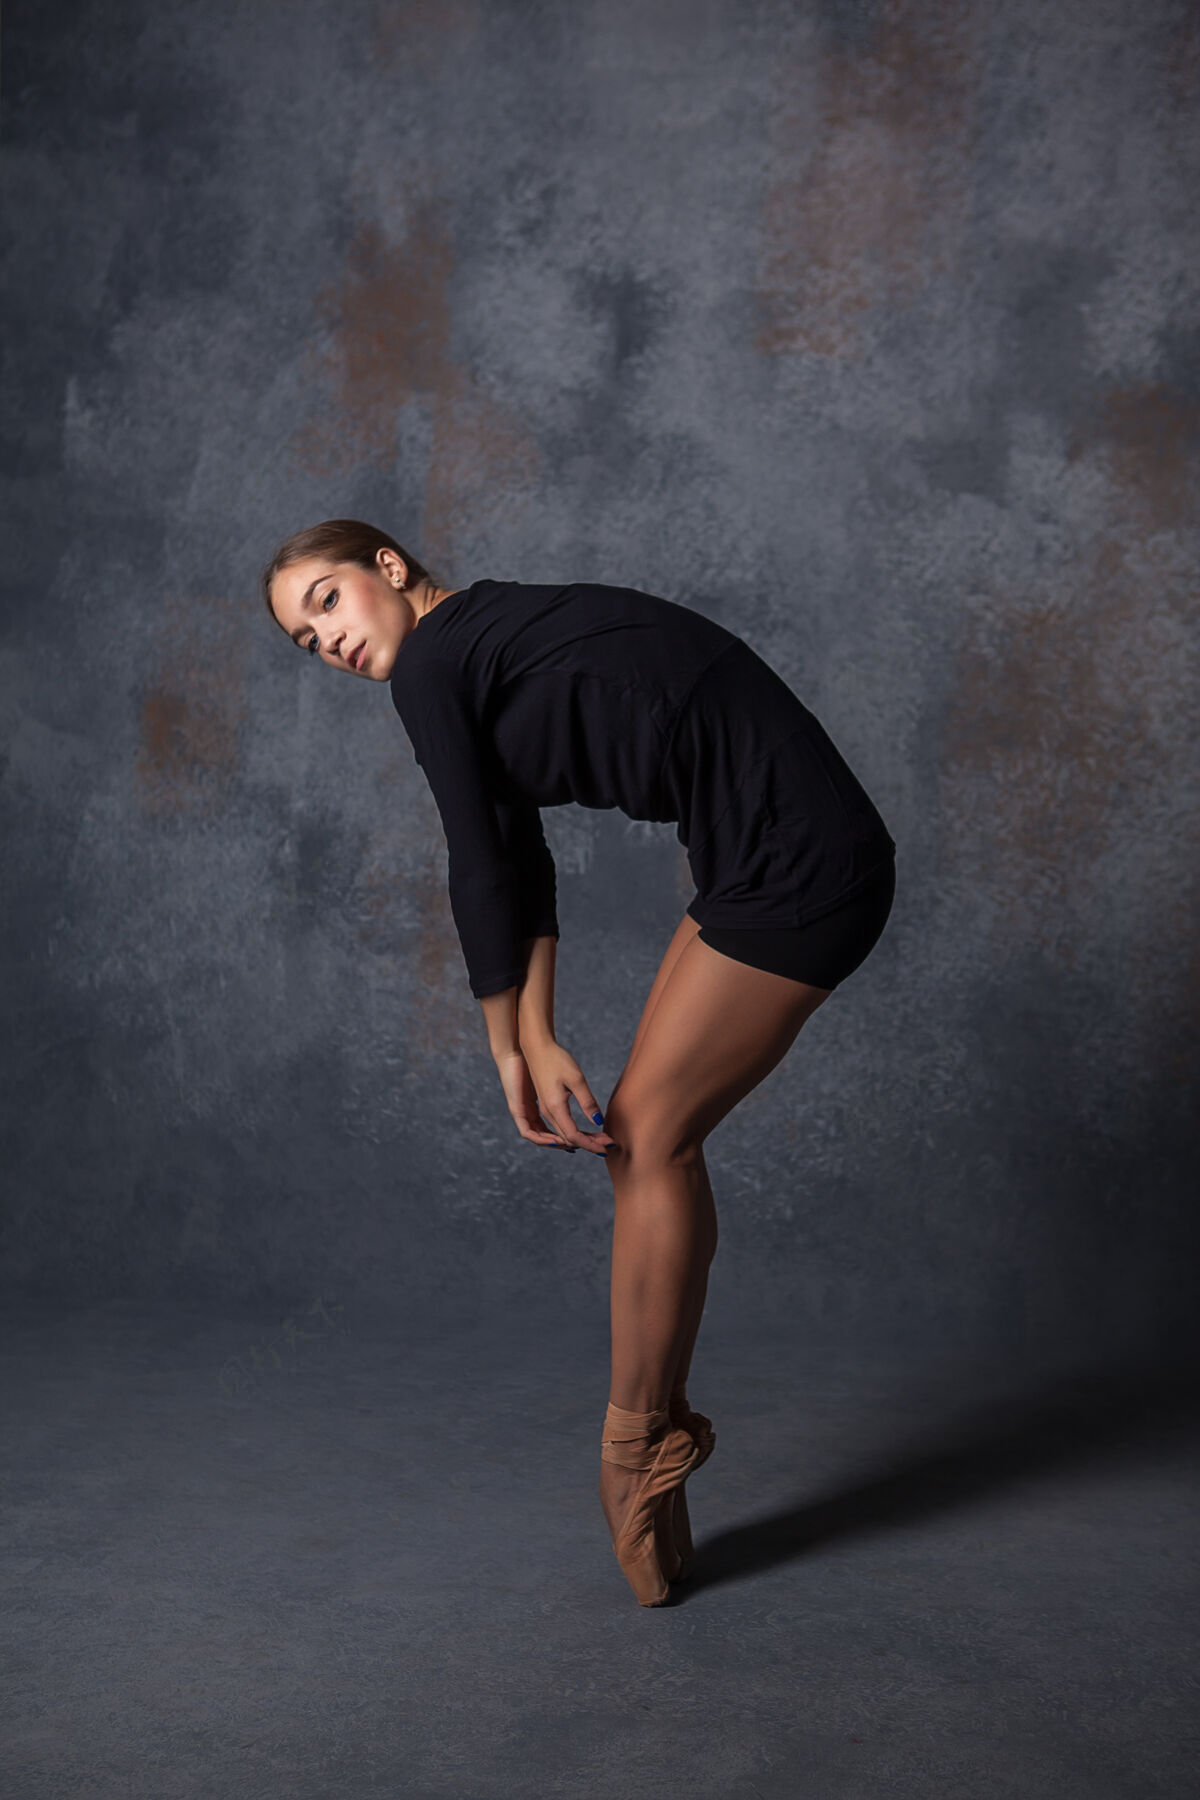 女孩年轻漂亮的现代风格舞者在灰色背景上摆姿势动作平衡身体